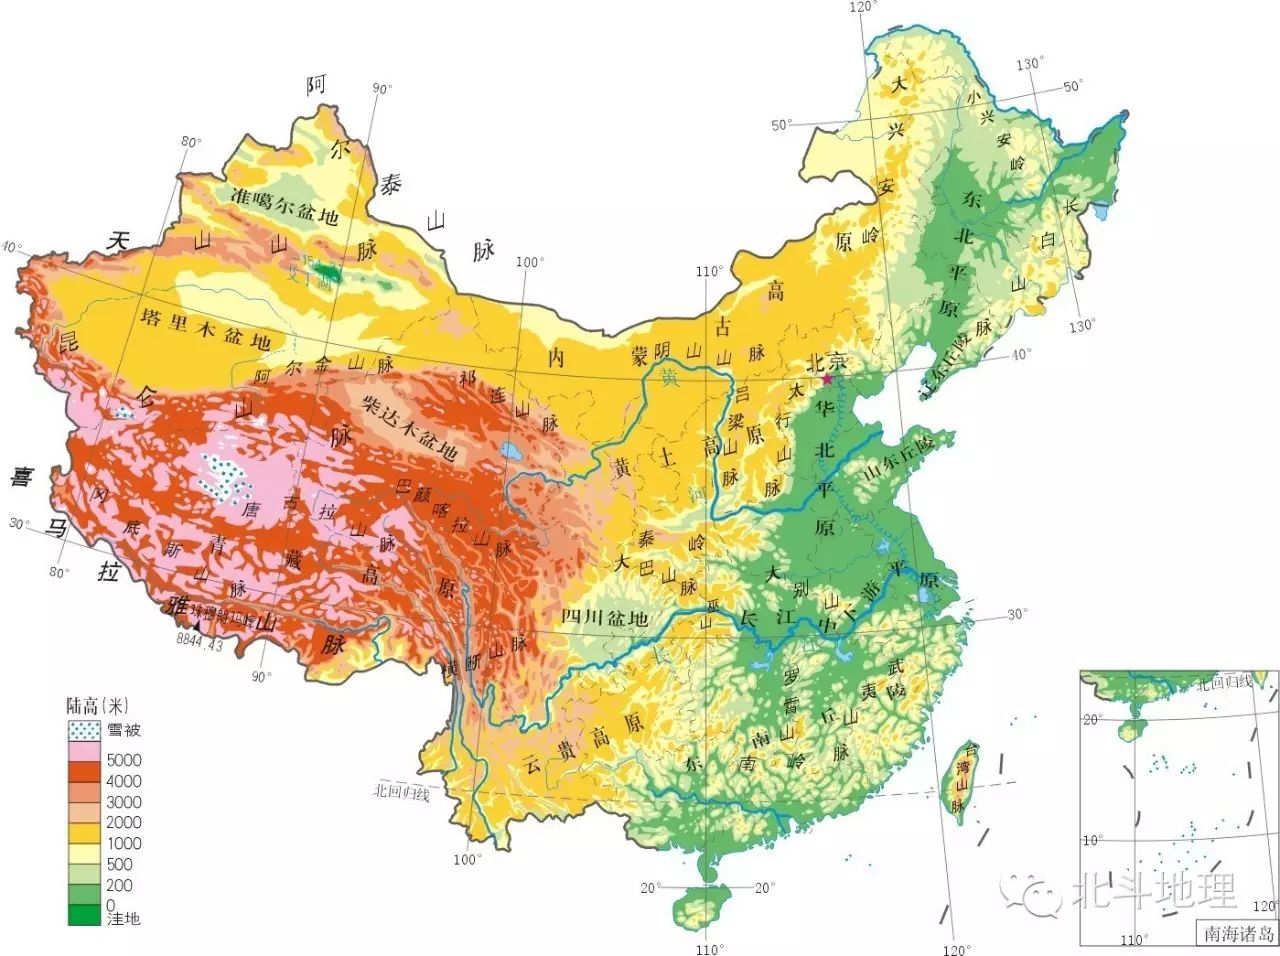 教师展示"中国地形图","中国气候类型图","中国农作物分布图"等地理